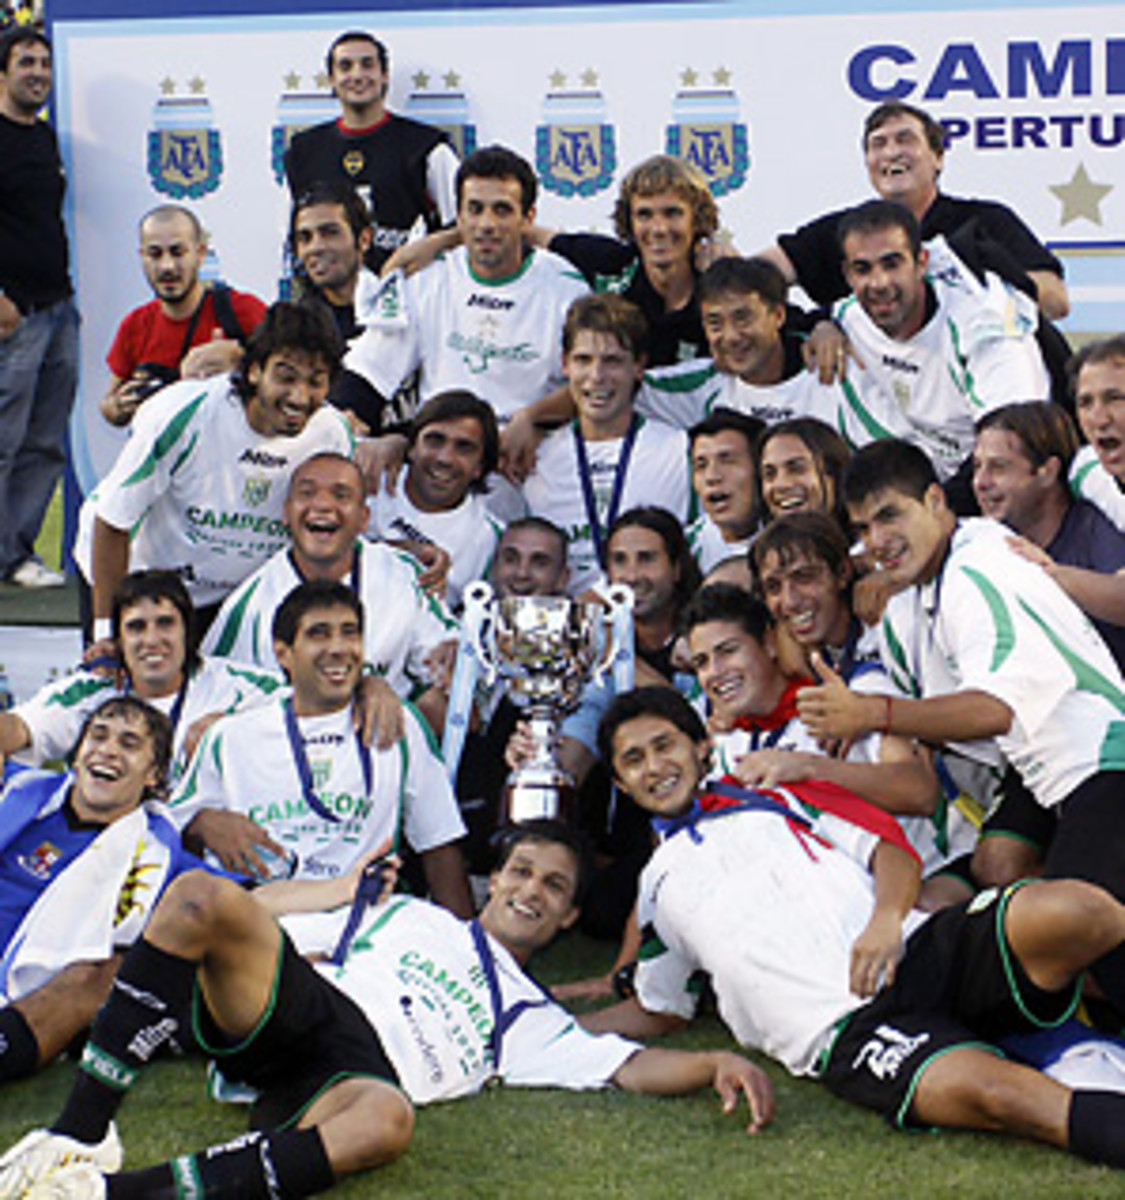 Colón lift historic Copa de la Liga title after defeating Racing Club